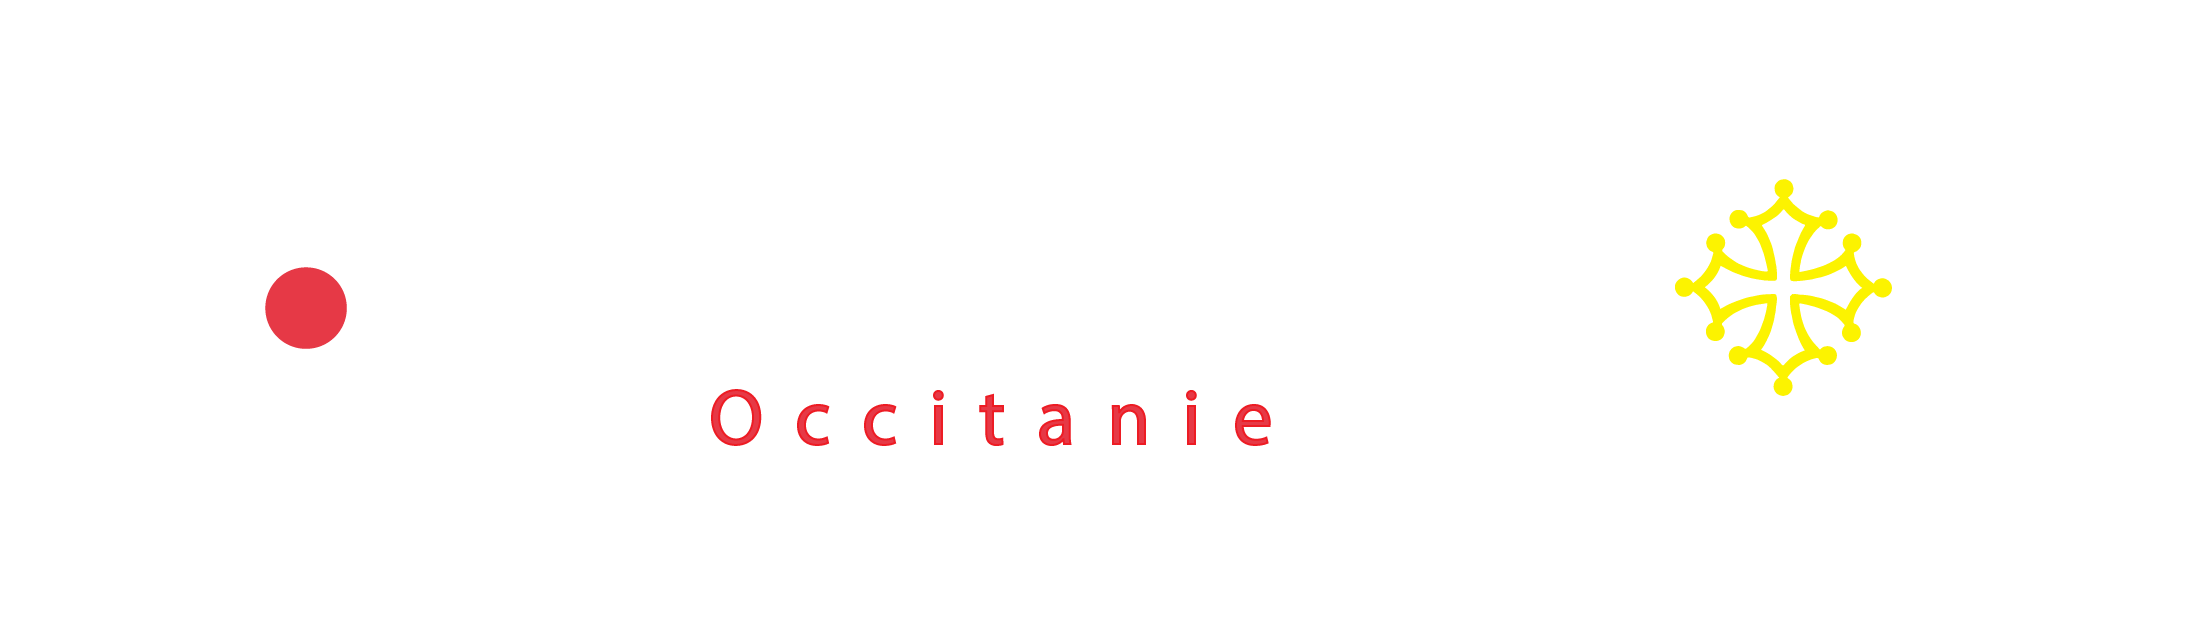 CTRC Occitanie